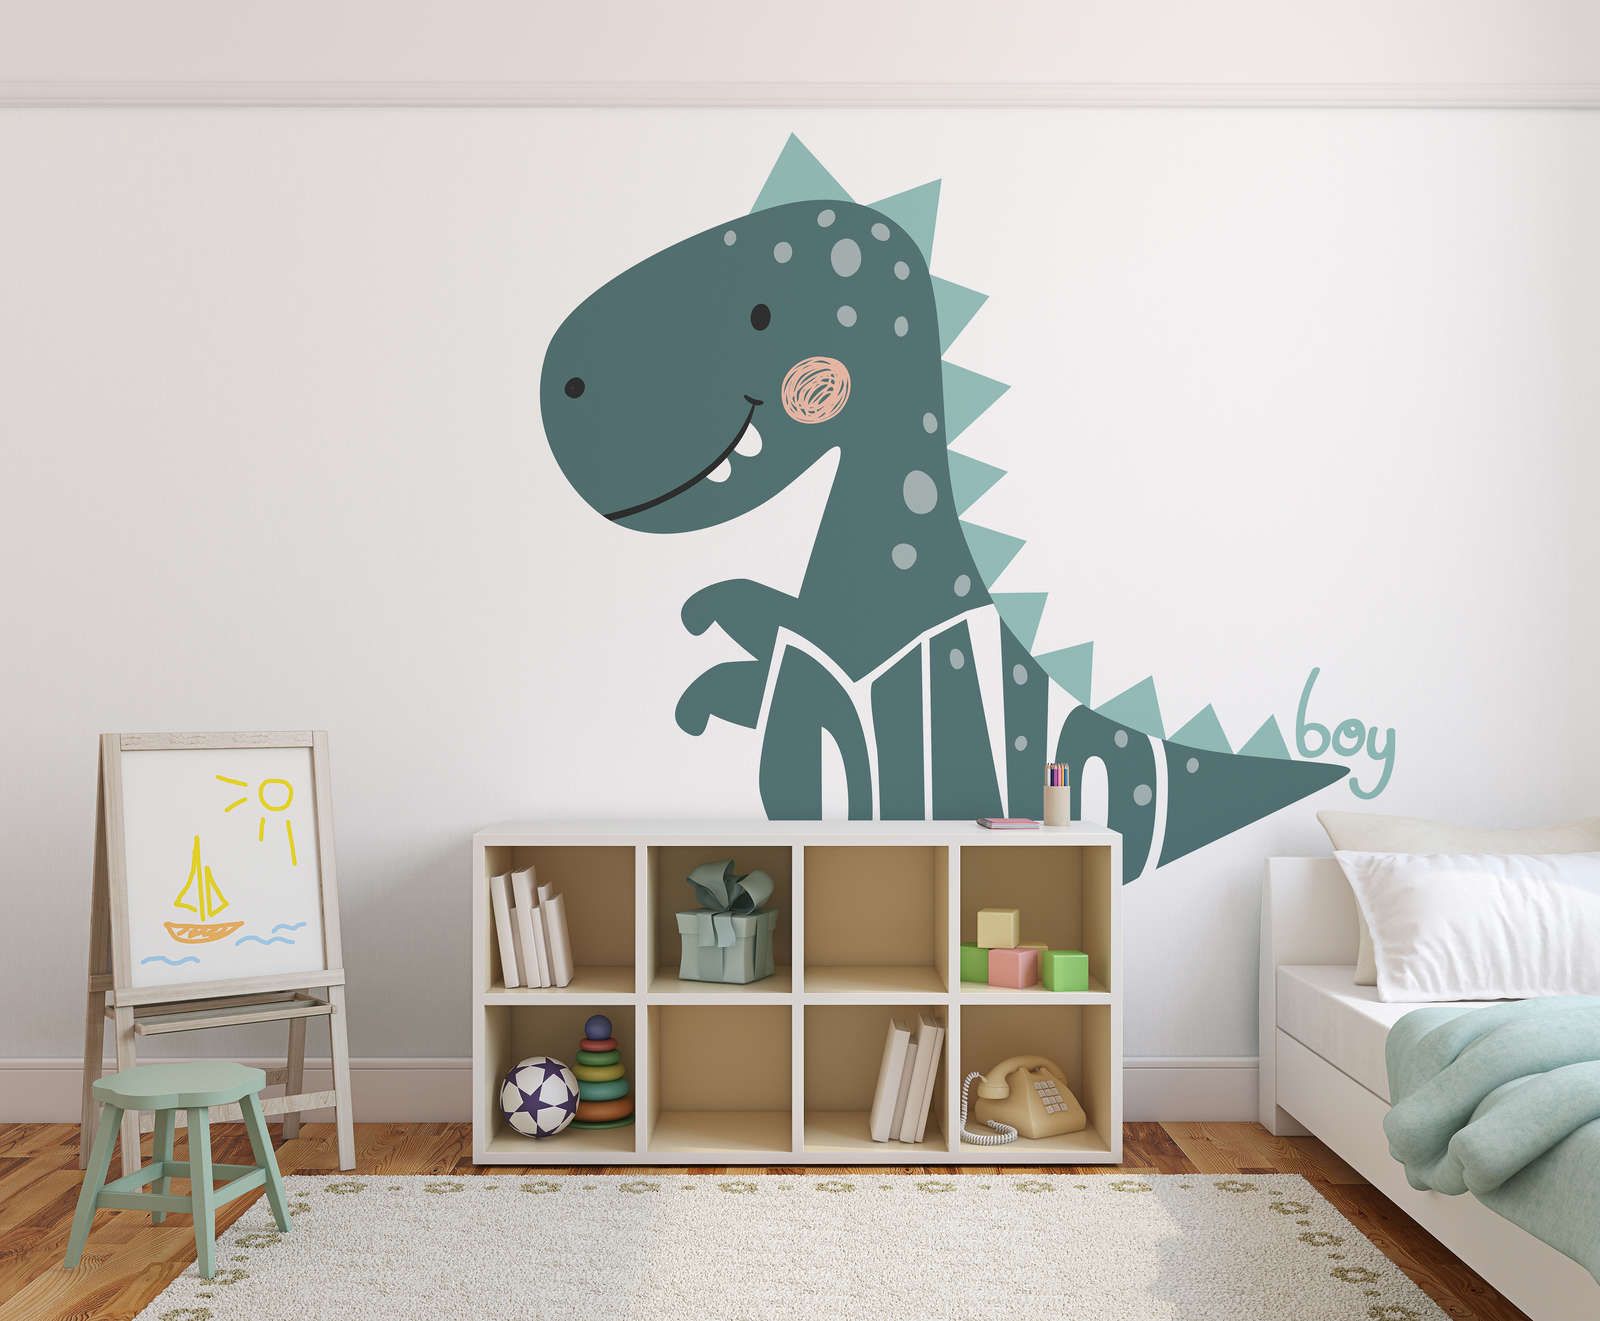             Fototapete fürs Kinderzimmer mit Dinosaurier – Glattes & perlmutt-schimmerndes Vlies
        